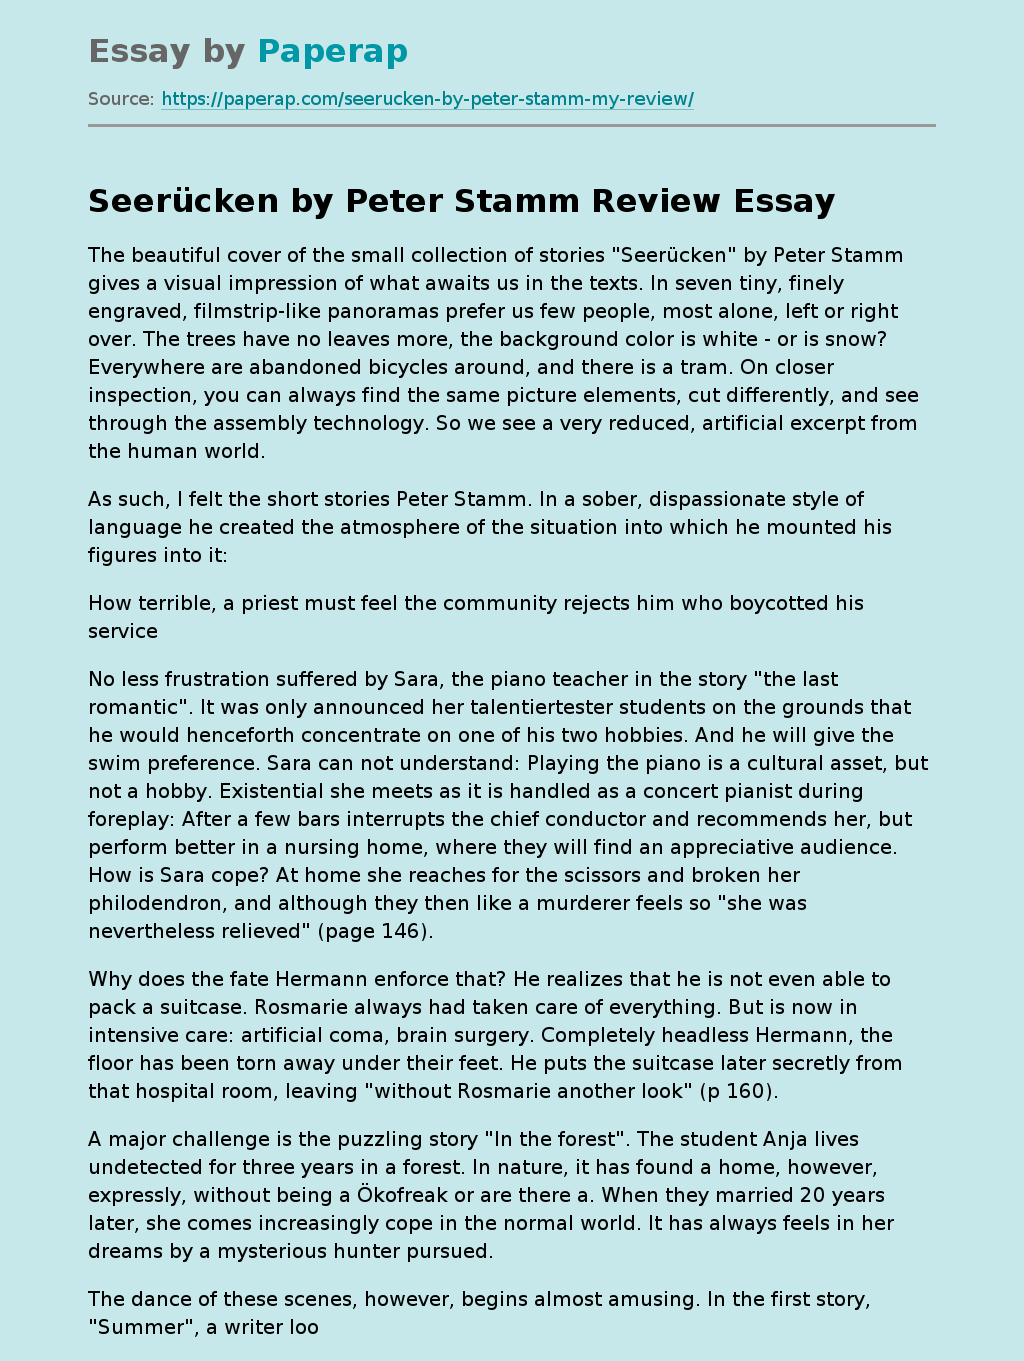 Book "Seerücken" by Peter Stamm